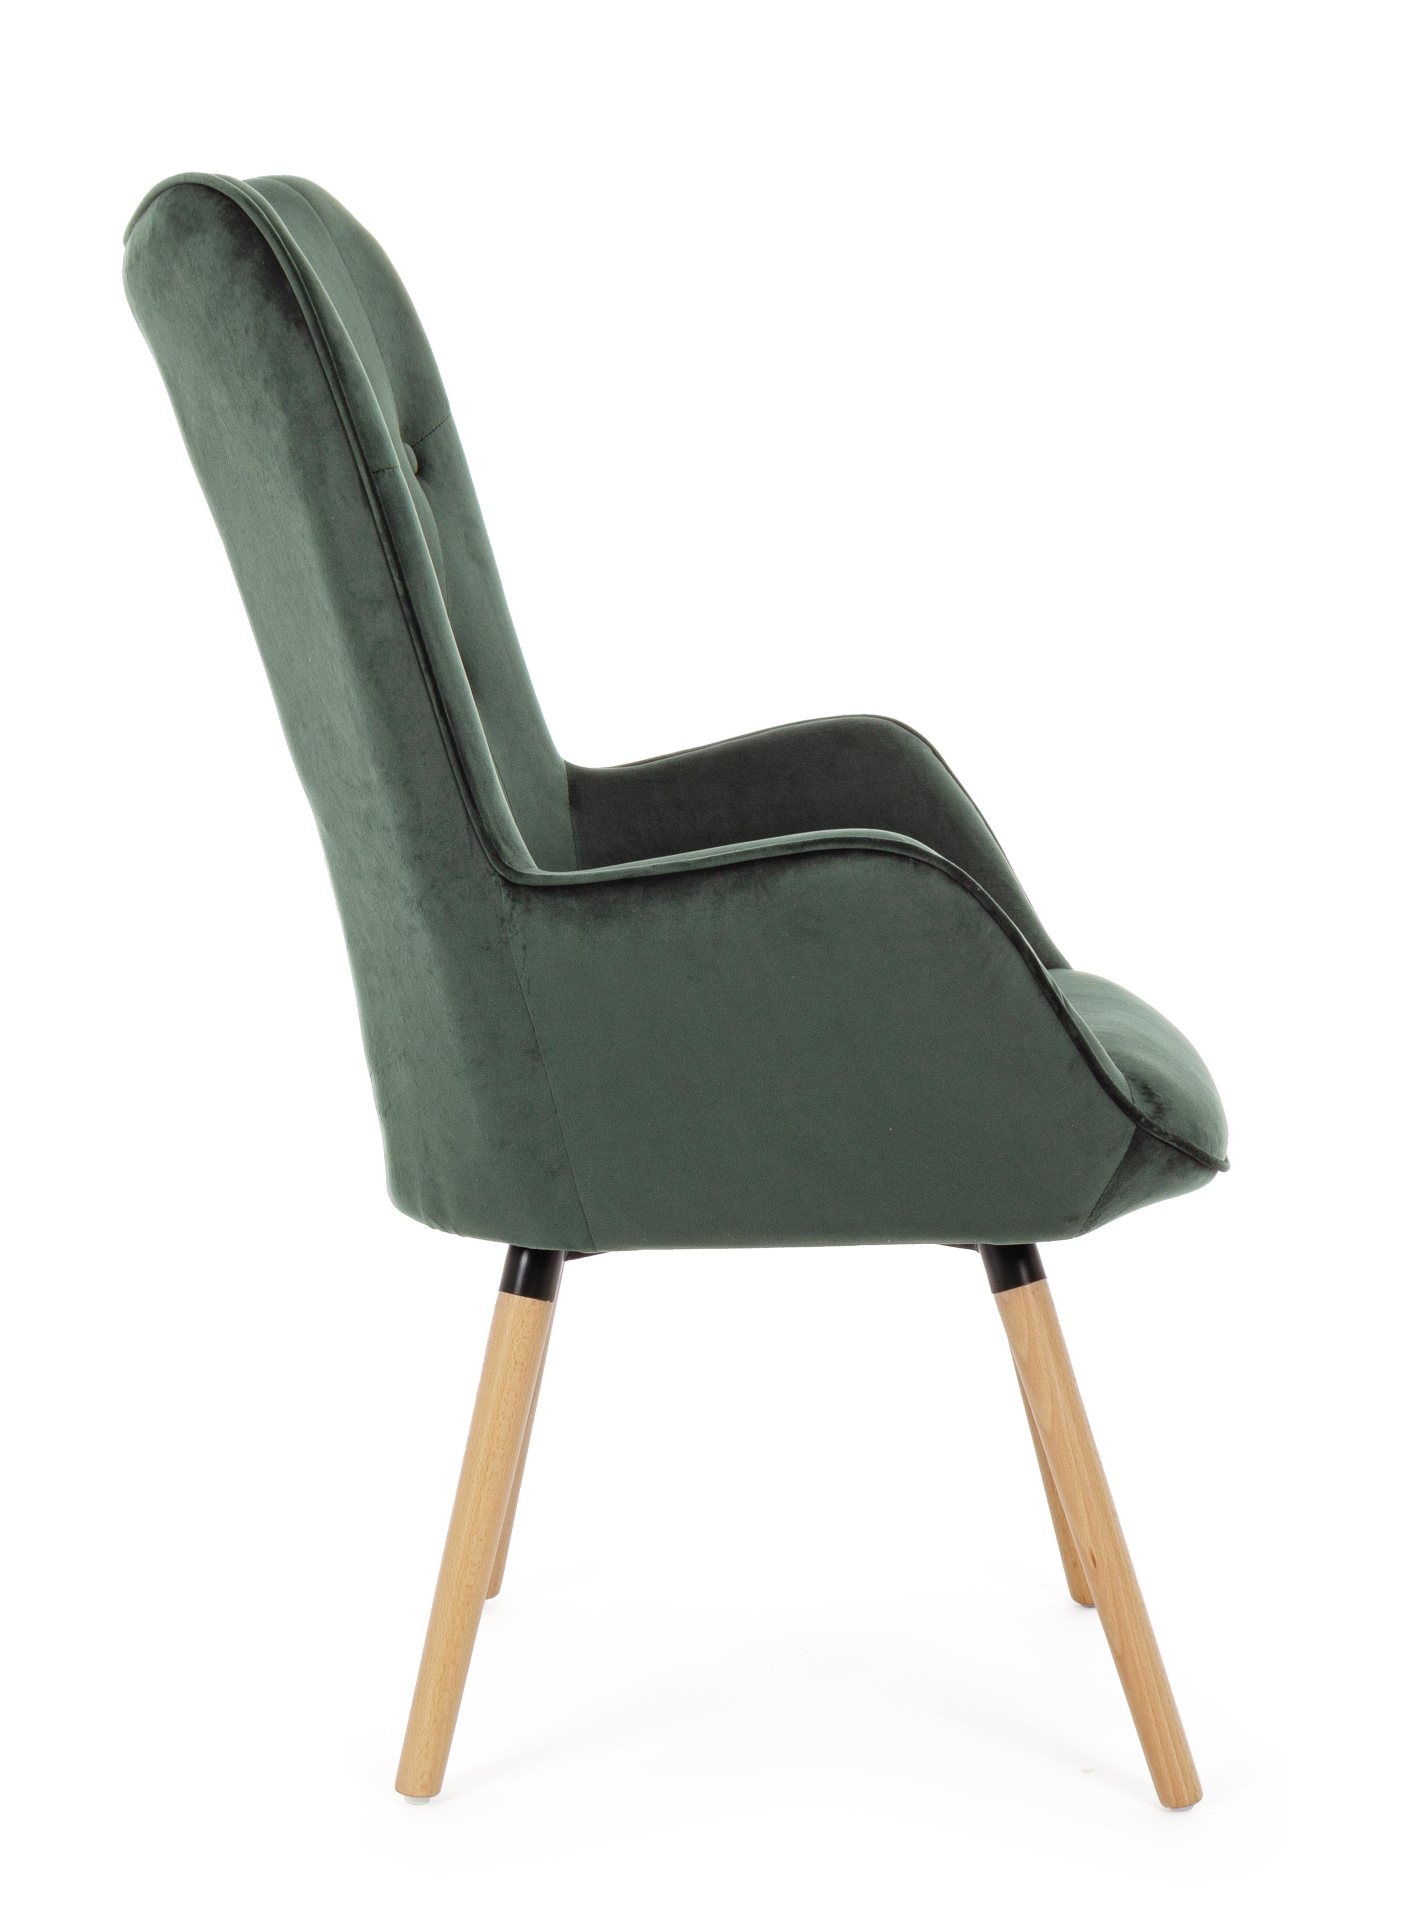 Der Sessel Juliet überzeugt mit seinem modernen Design. Gefertigt wurde er aus Stoff in Samt-Optik, welcher einen grünen Farbton besitzt. Das Gestell ist aus Buchenholz und hat eine natürliche Farbe. Der Sessel besitzt eine Sitzhöhe von 48 cm. Die Breite 